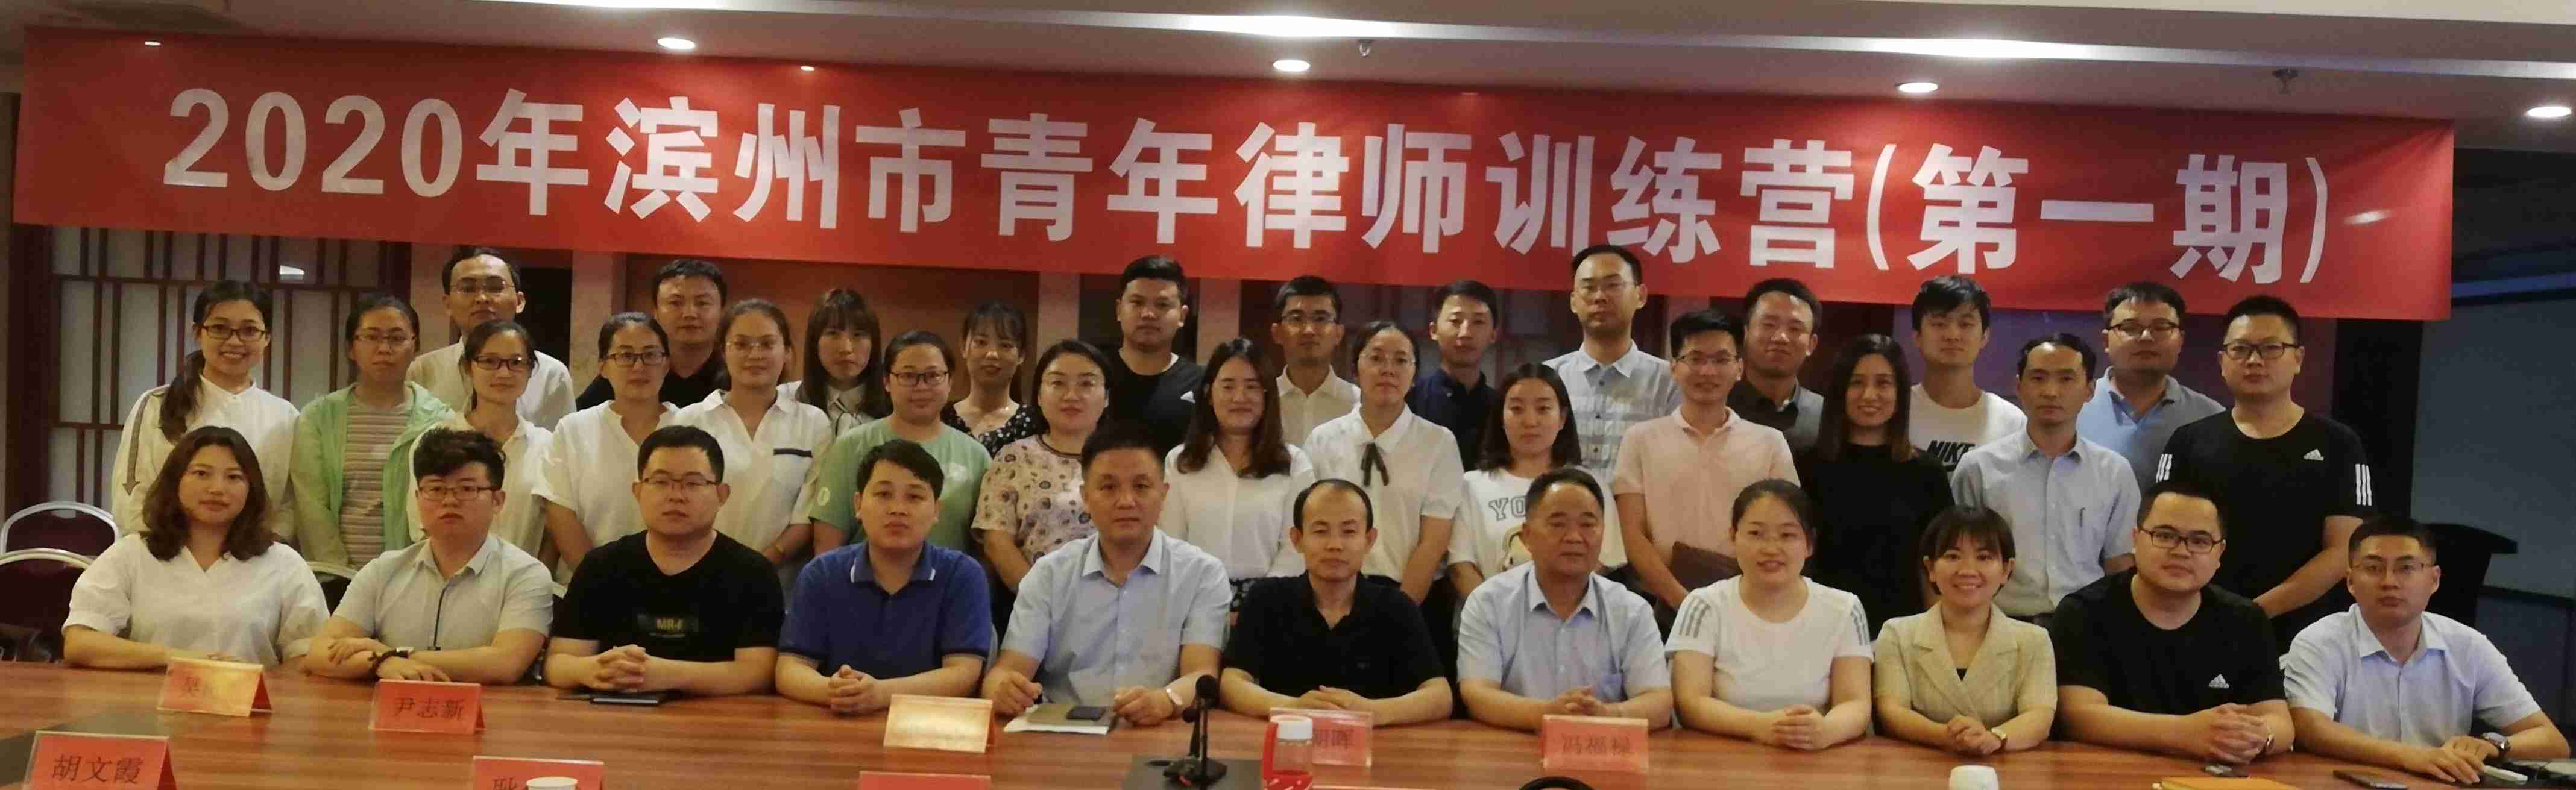 胡文霞、李国梅律师参加“2020年滨州市青年律师训练营”